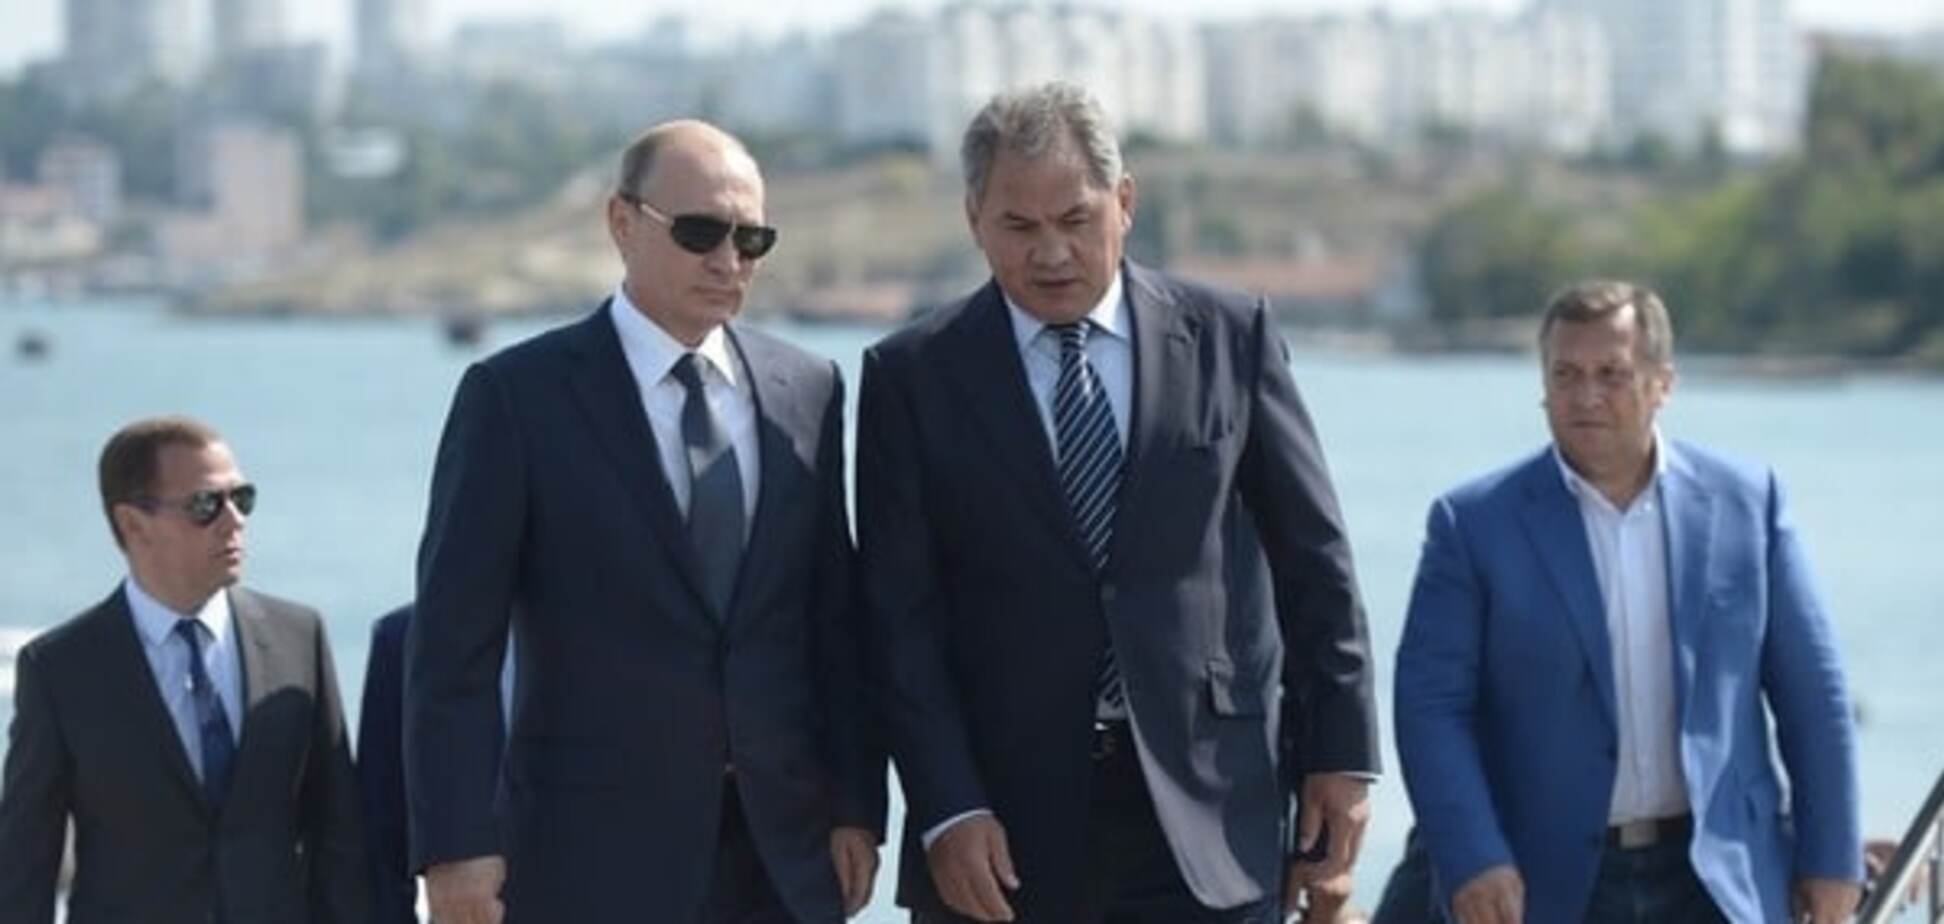 Путин скорее обанкротит Россию, чем вернет Крым – британский журналист